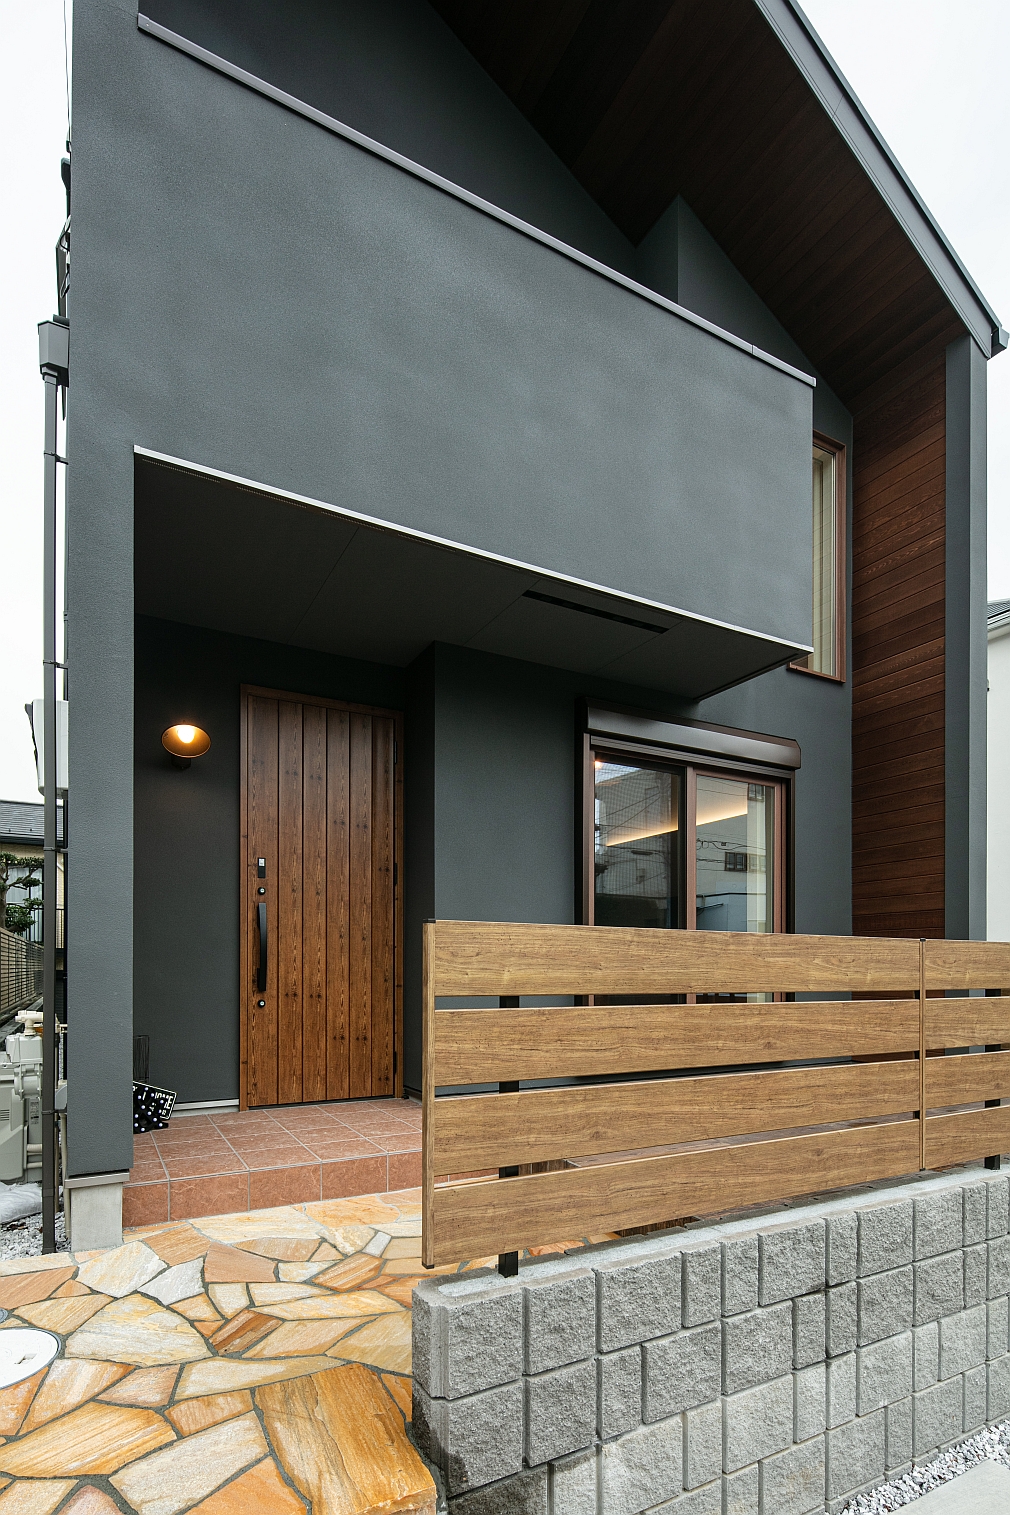 インテリア好きのご夫婦が建てた大人の西海岸スタイルの家 神奈川 横浜 相模原エリアの注文住宅ならビルドアート